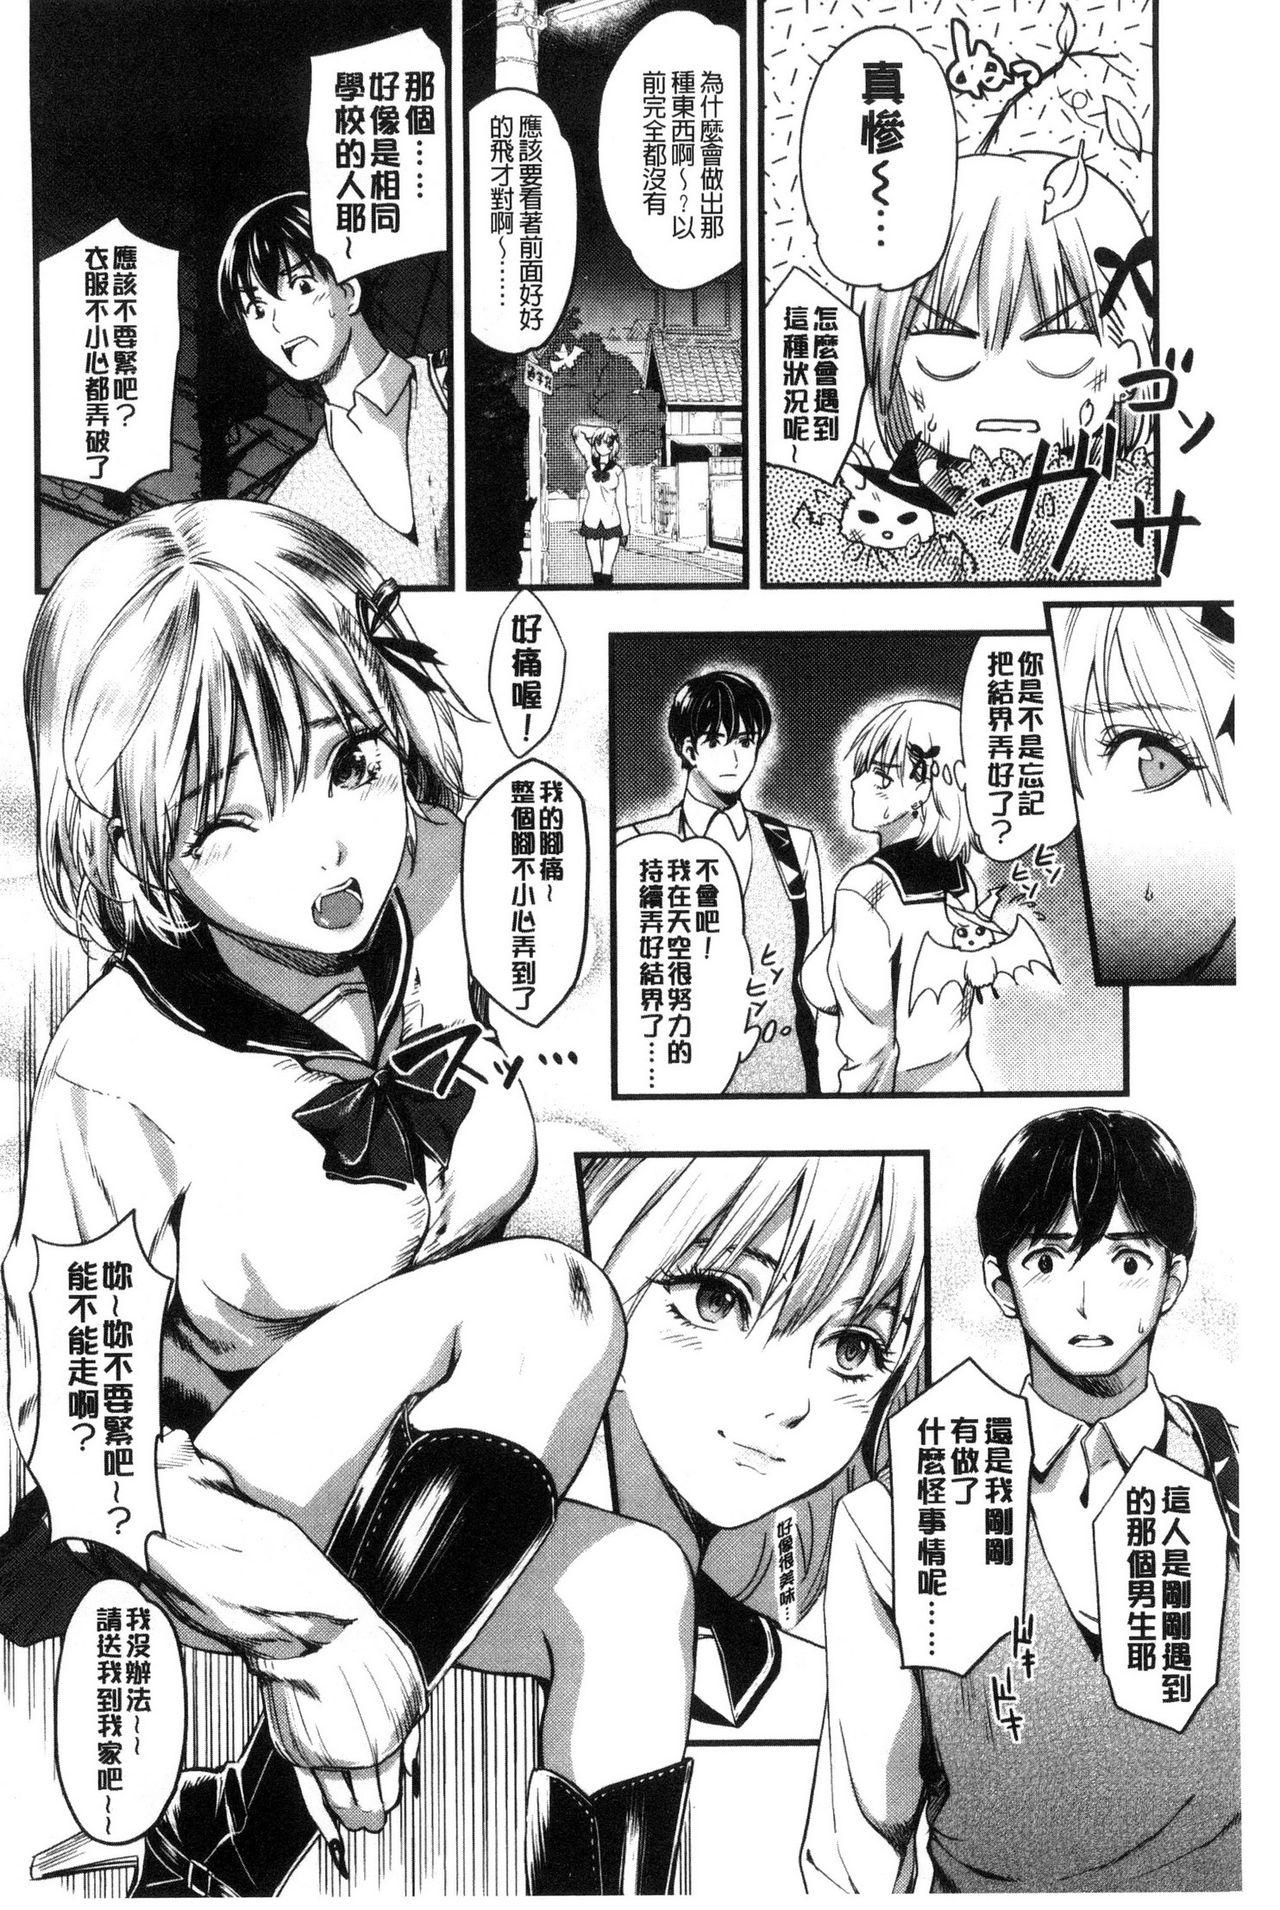 Seifuku no Mama Aishinasai! - Love in school uniform 68